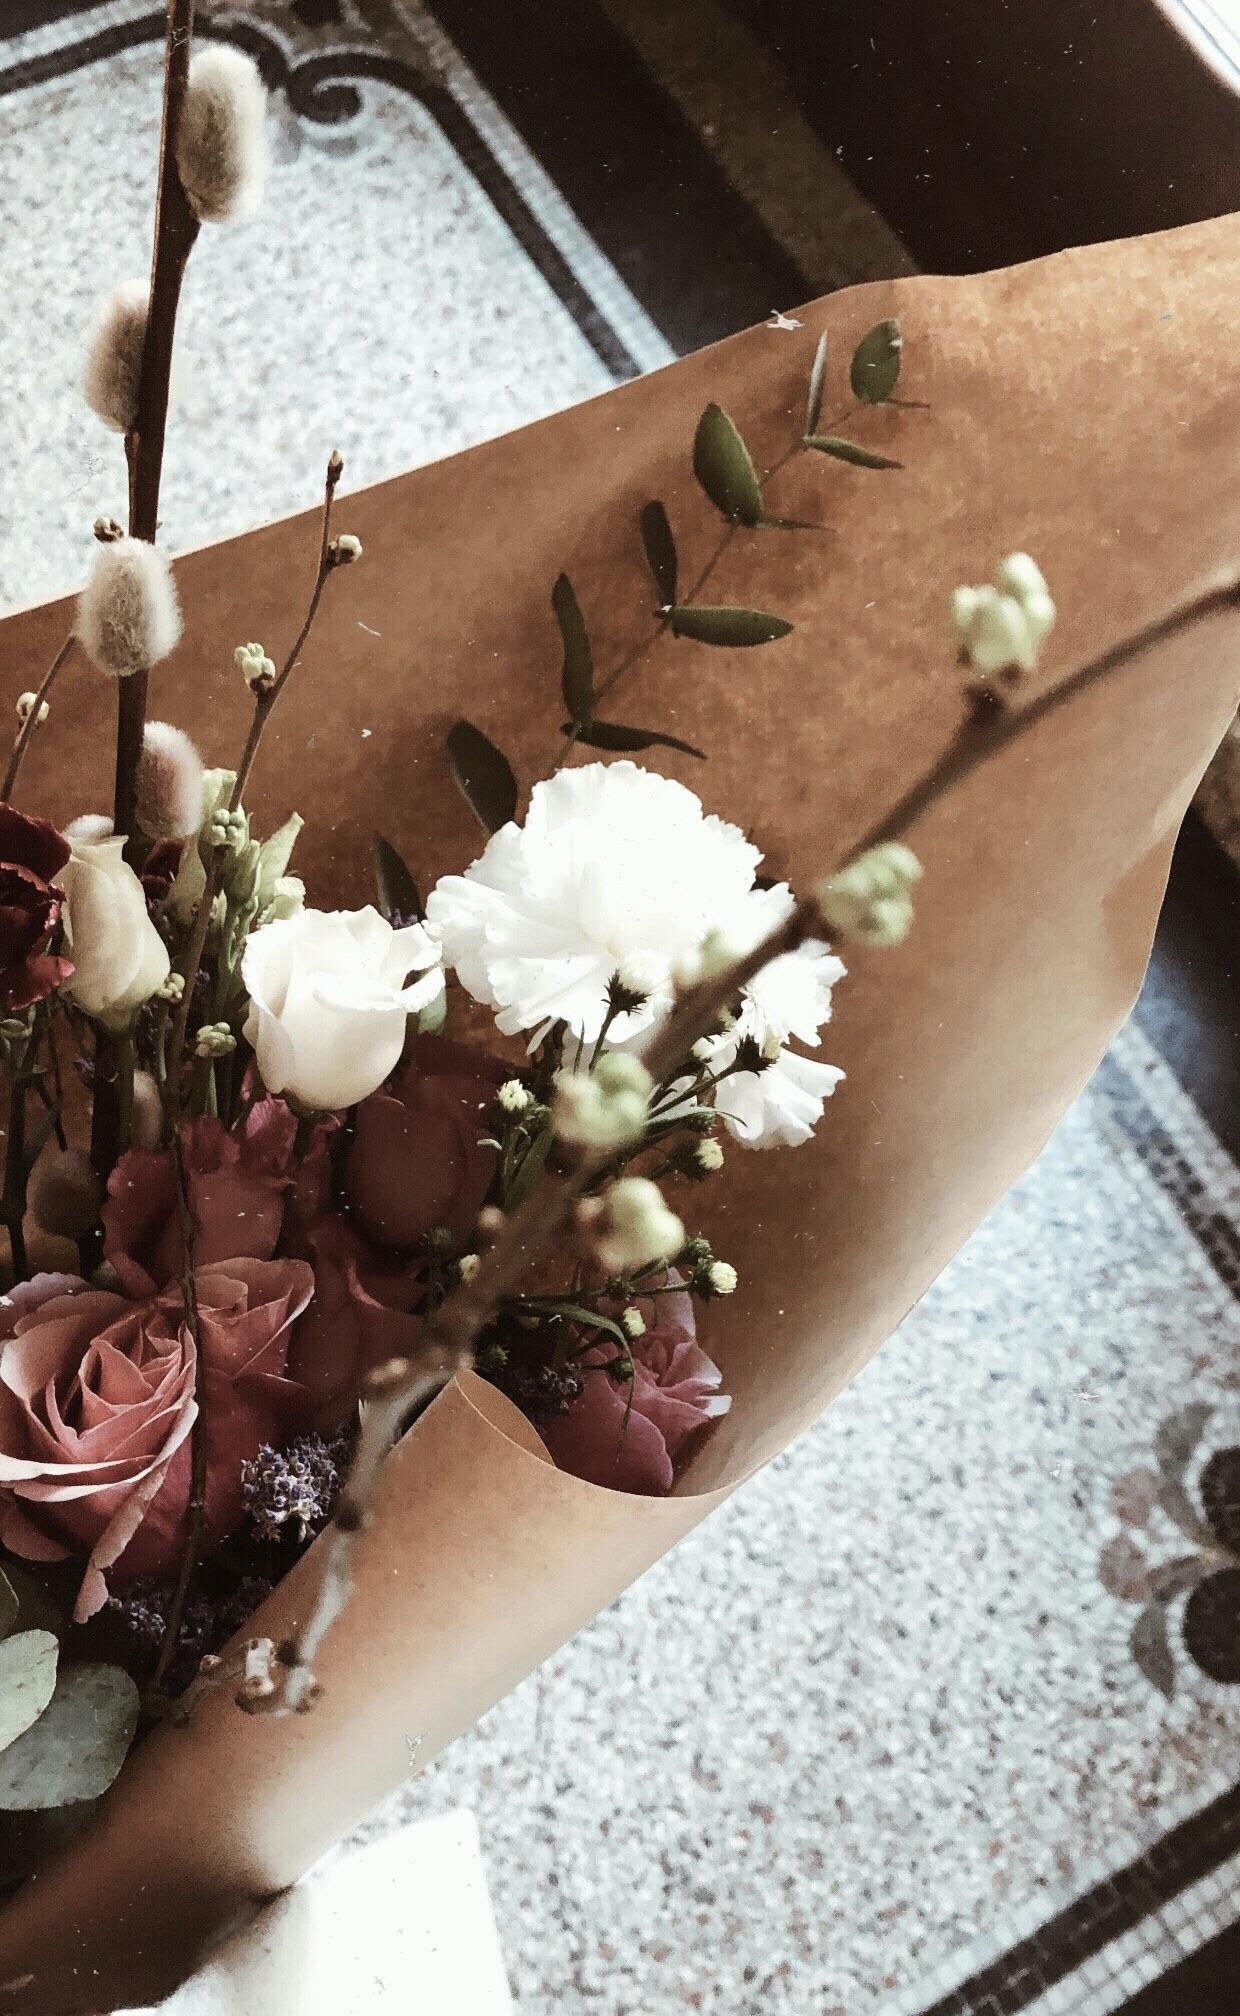 Blumenstrauß für die Freundin, die zum Kaffee und Kuchen eingeladen hat! #sundays #flowerlover #qualitytime #bouquet